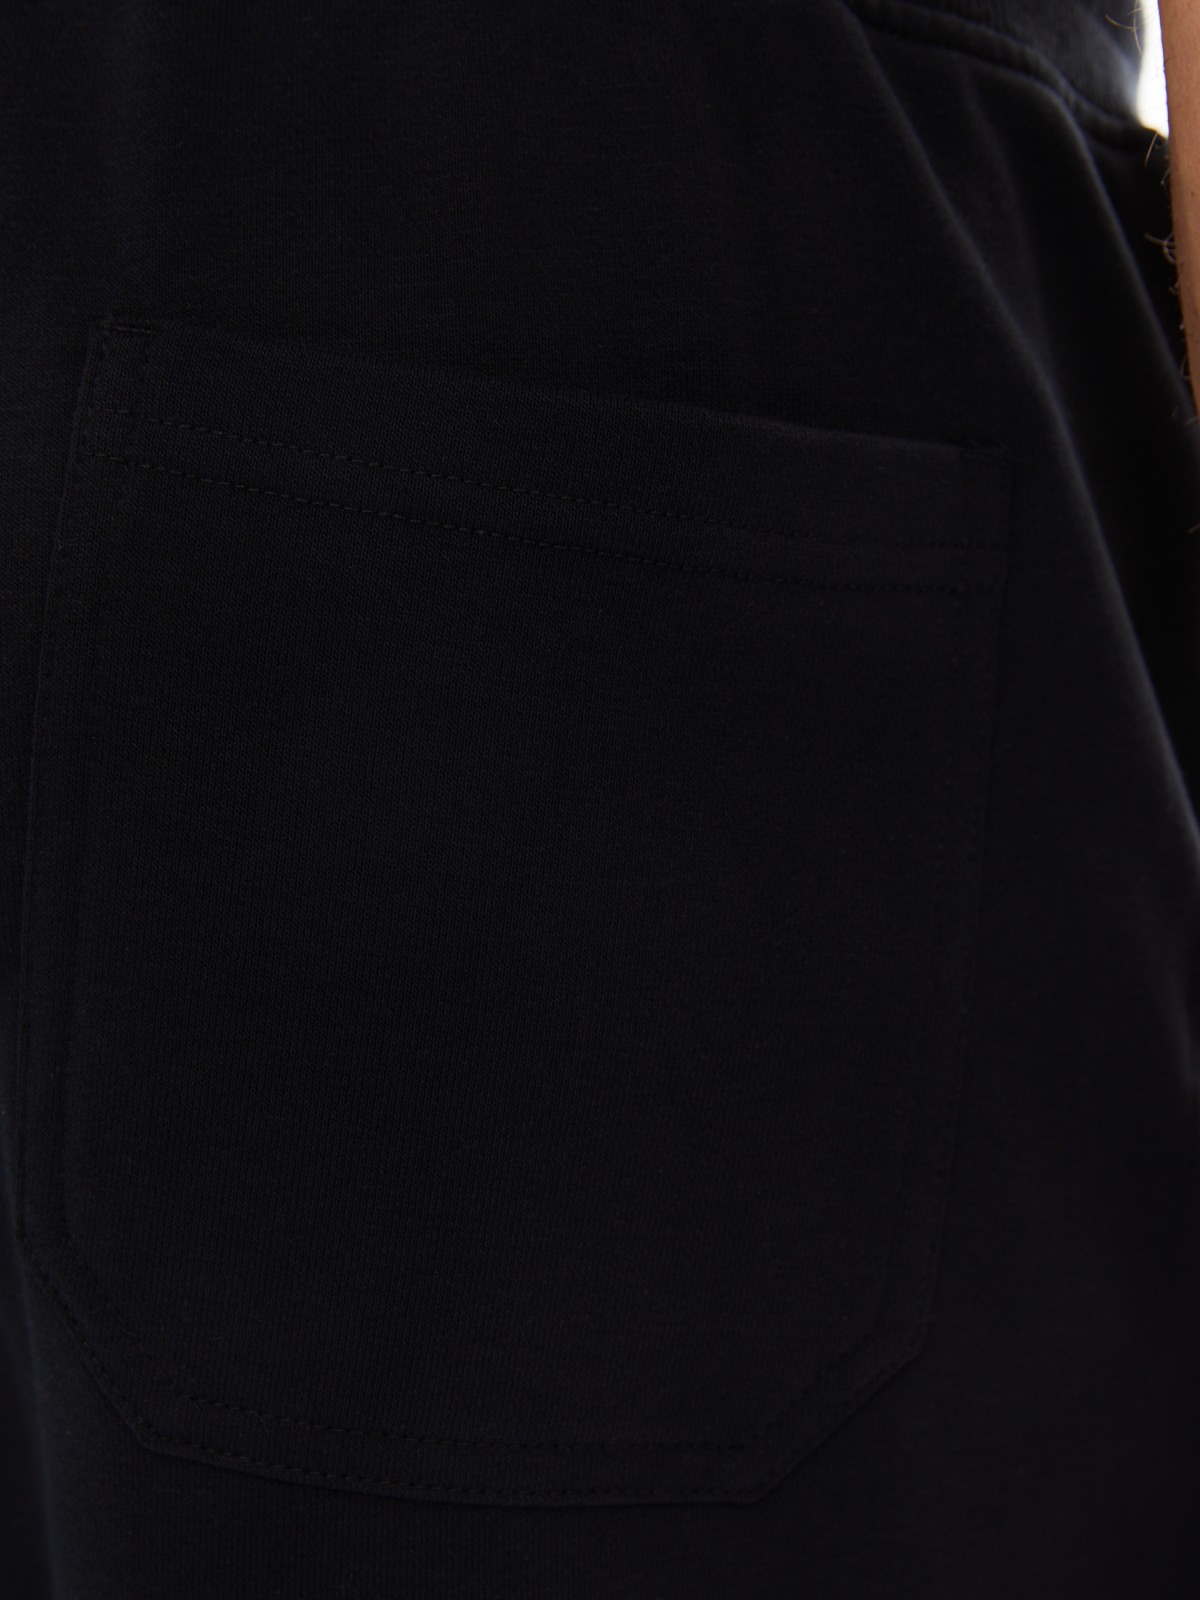 Трикотажные брюки-джоггеры в спортивном стиле zolla 014137675022, цвет черный, размер S - фото 6